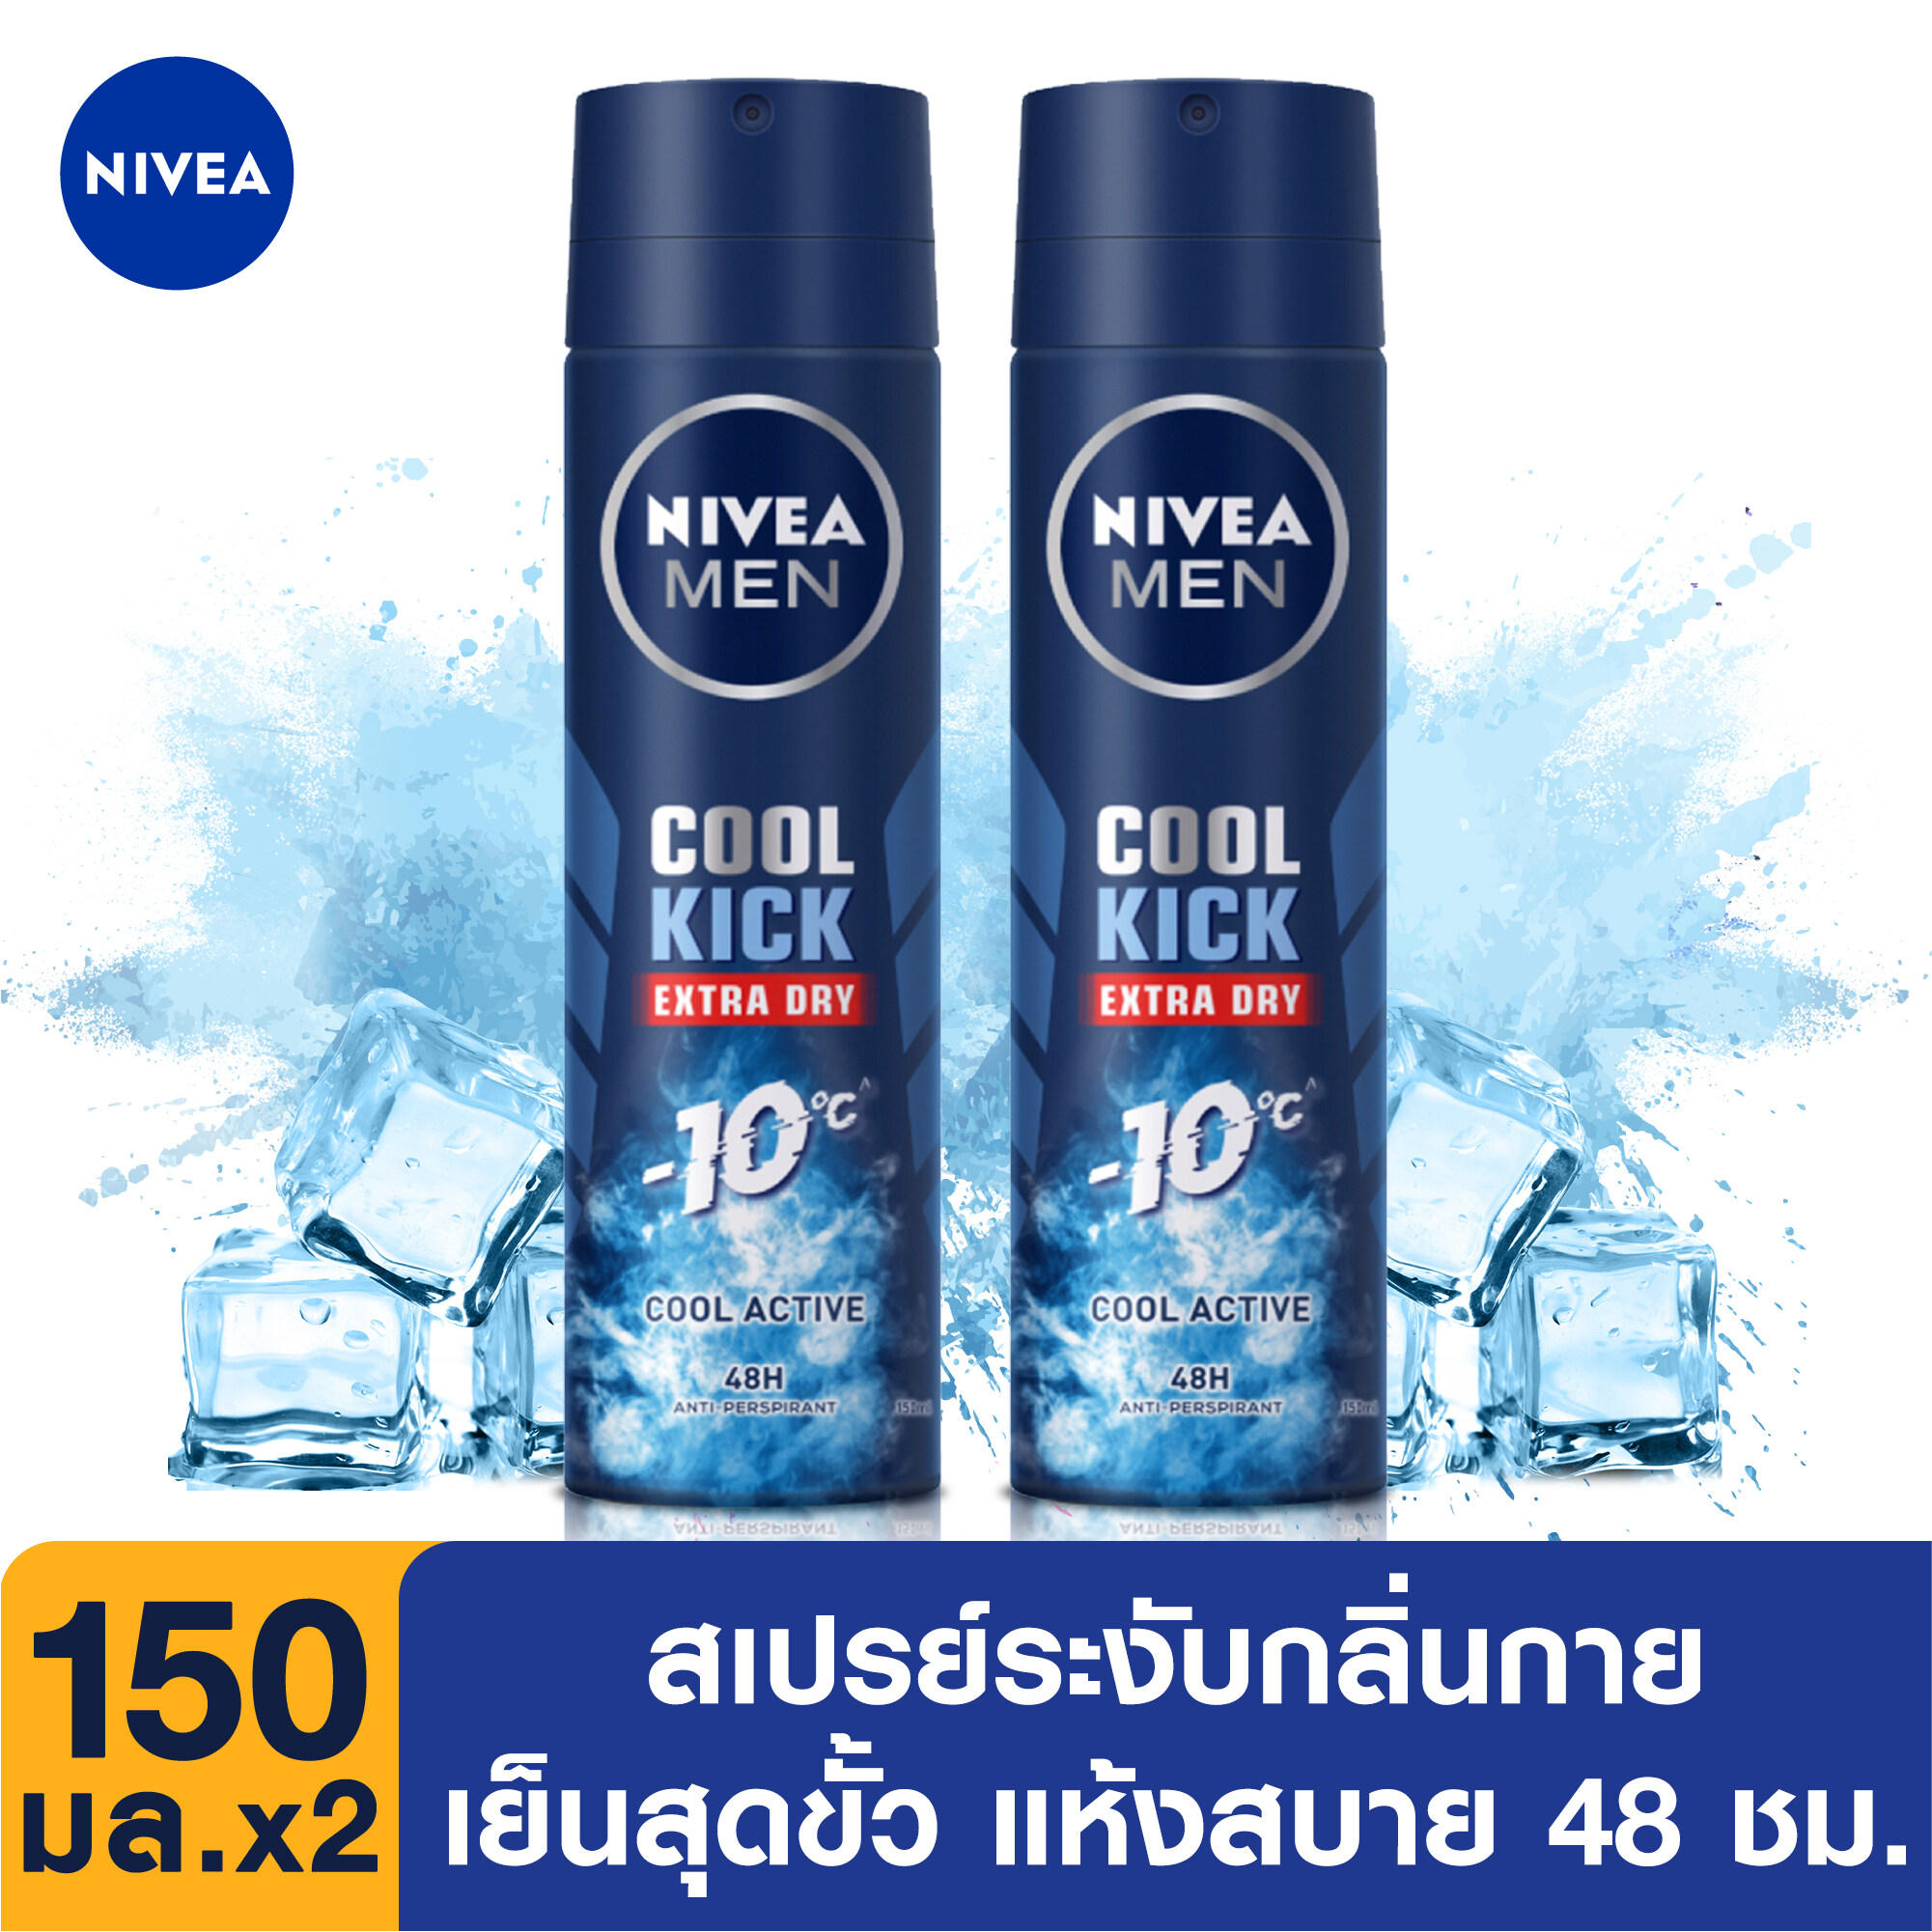 นีเวีย ดีโอ เมน คูล คิก สเปรย์ ระงับกลิ่นกาย สำหรับผู้ชาย 150 มล.2ชิ้น จำนวน NIVEA Deo Men Cool Kick Spray 150 ml. 2pcs(สเปรย์ ผู้ชาย, deodorant)